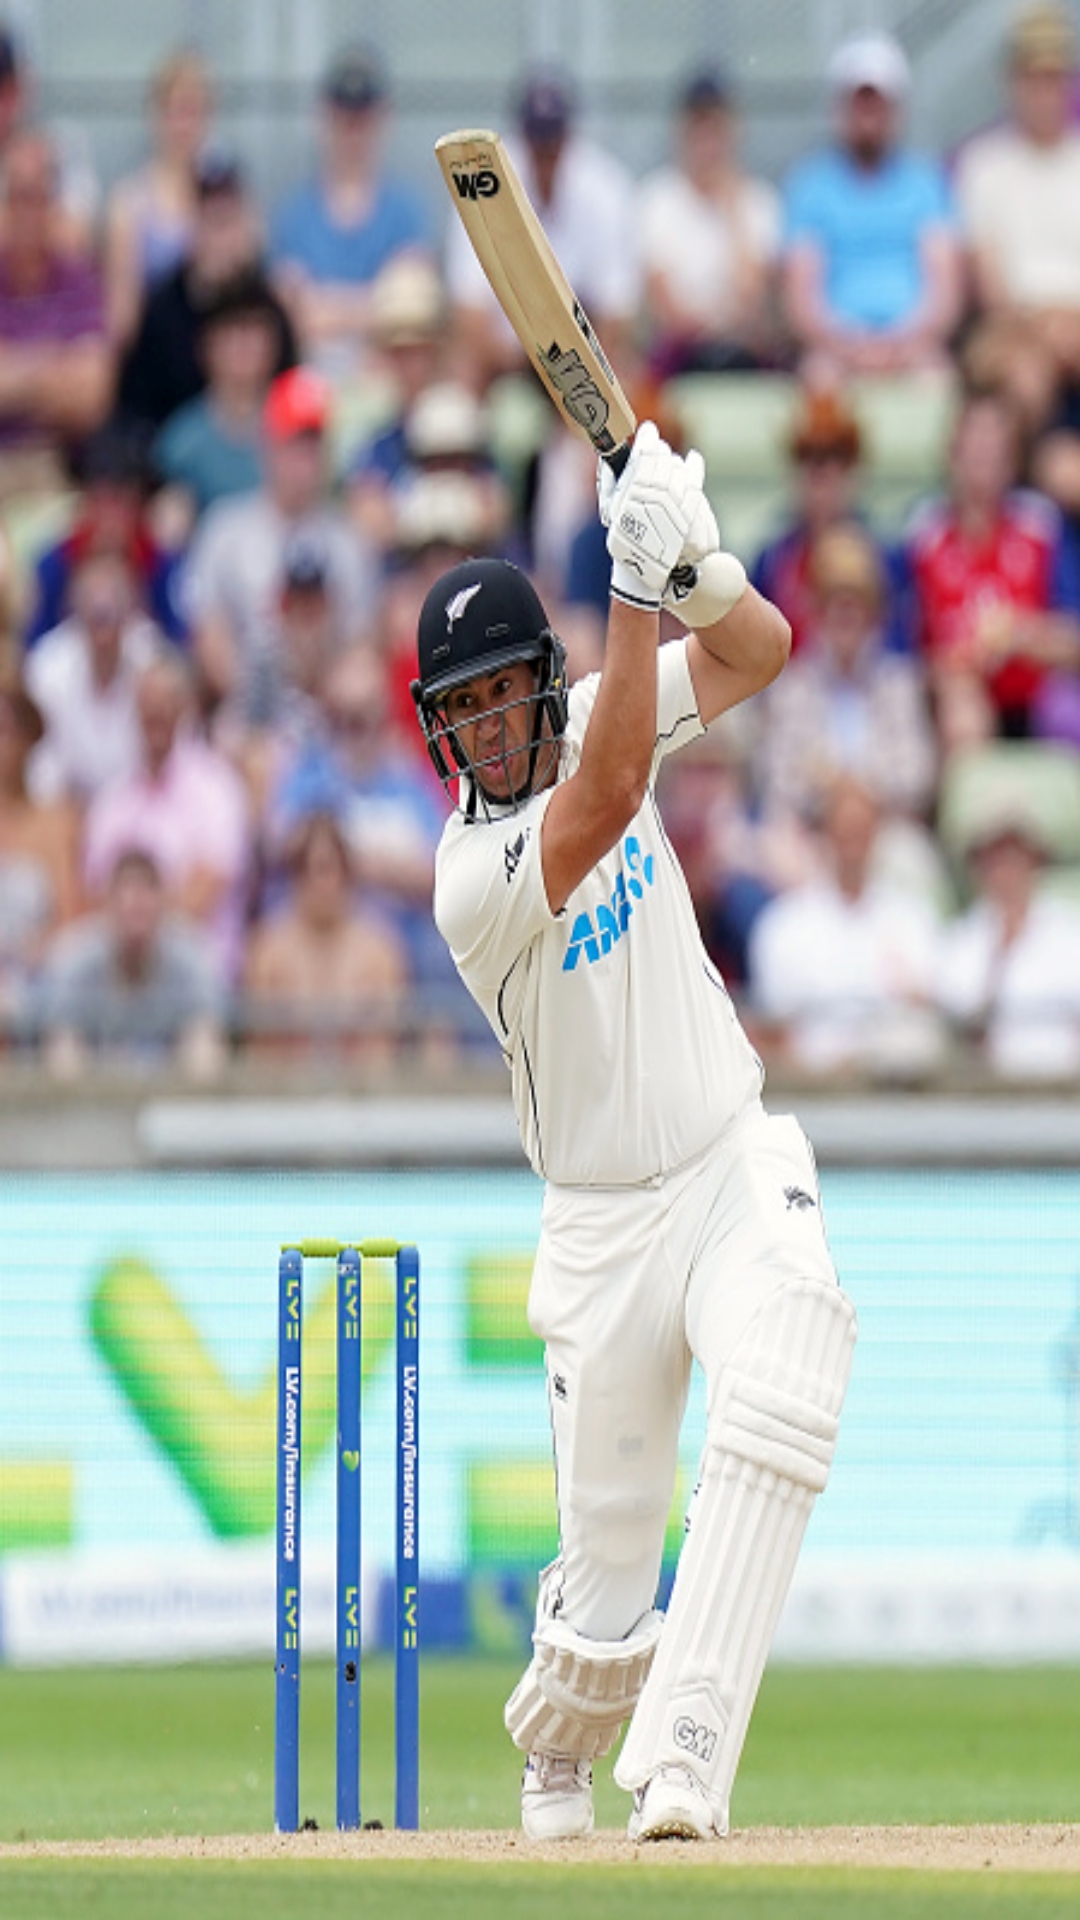 न्यूजीलैंड के लिए टेस्ट क्रिकेट में सबसे ज्यादा डबल सेंचुरी लगाने वाले टॉप 5 बल्लेबाजों की लिस्ट